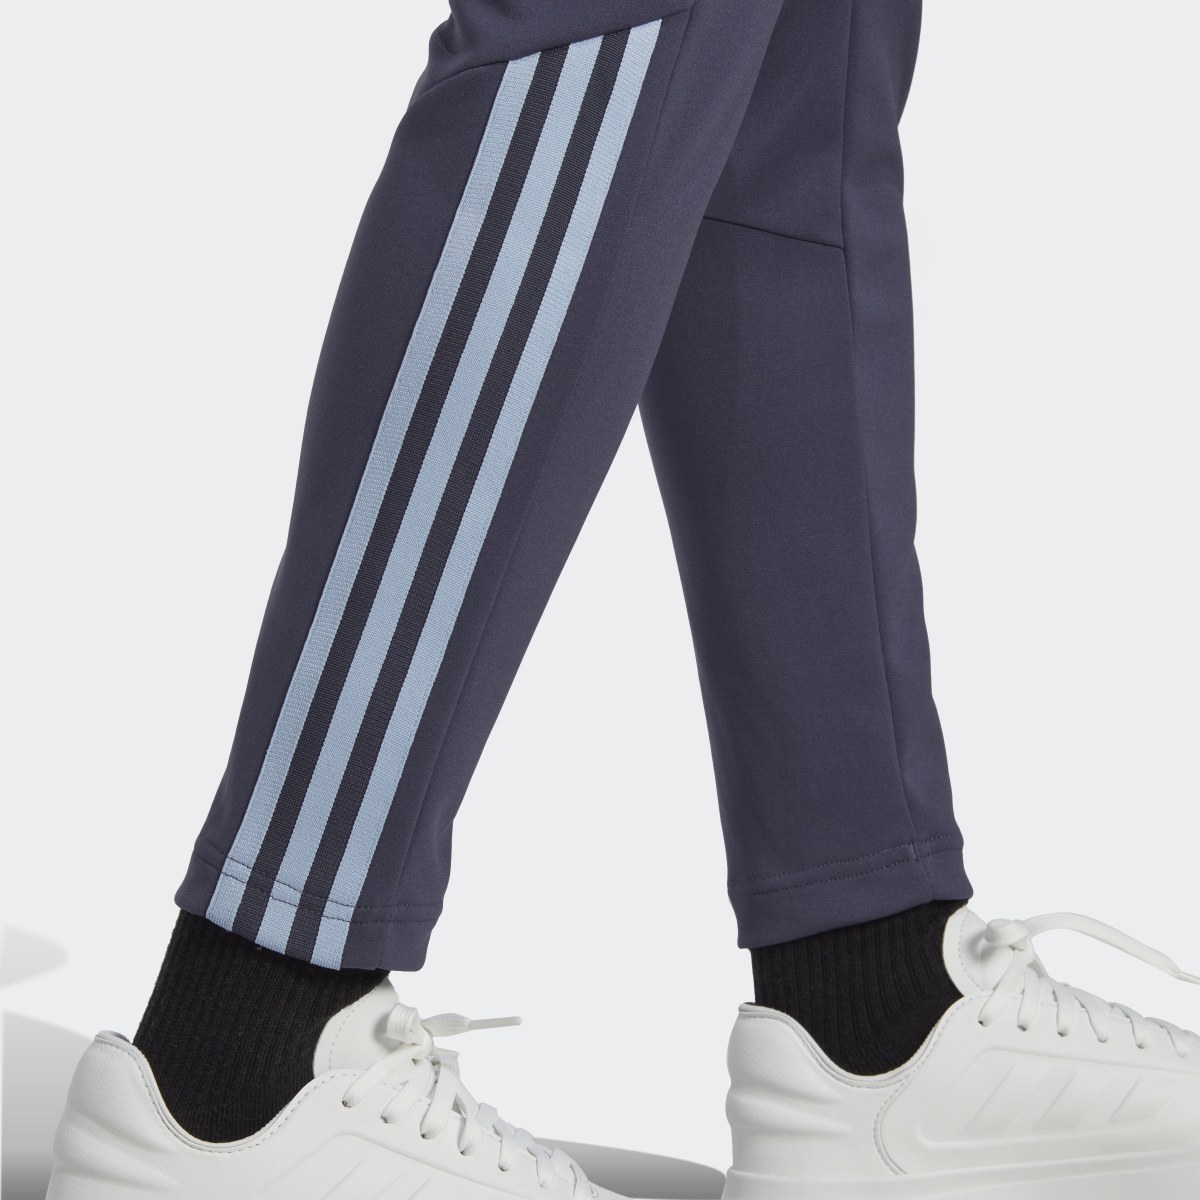 Adidas Pants Tiro Slim. 6